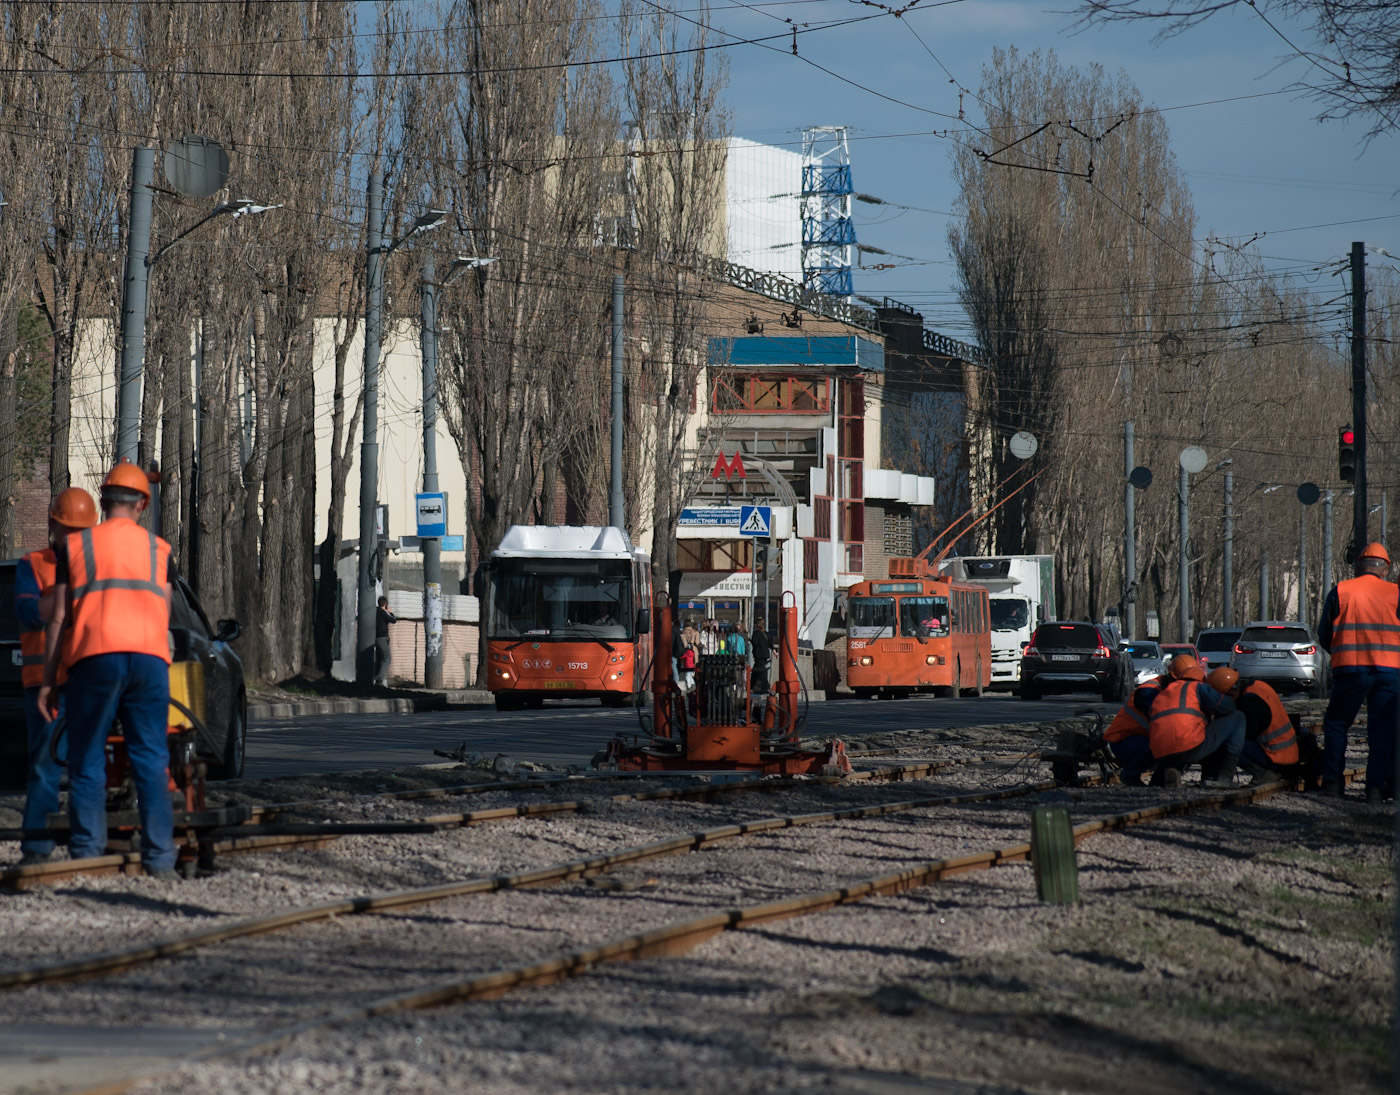 Нижний Новгород — Ремонт трамвайной линии в рамках концессионного соглашения. Этап №1